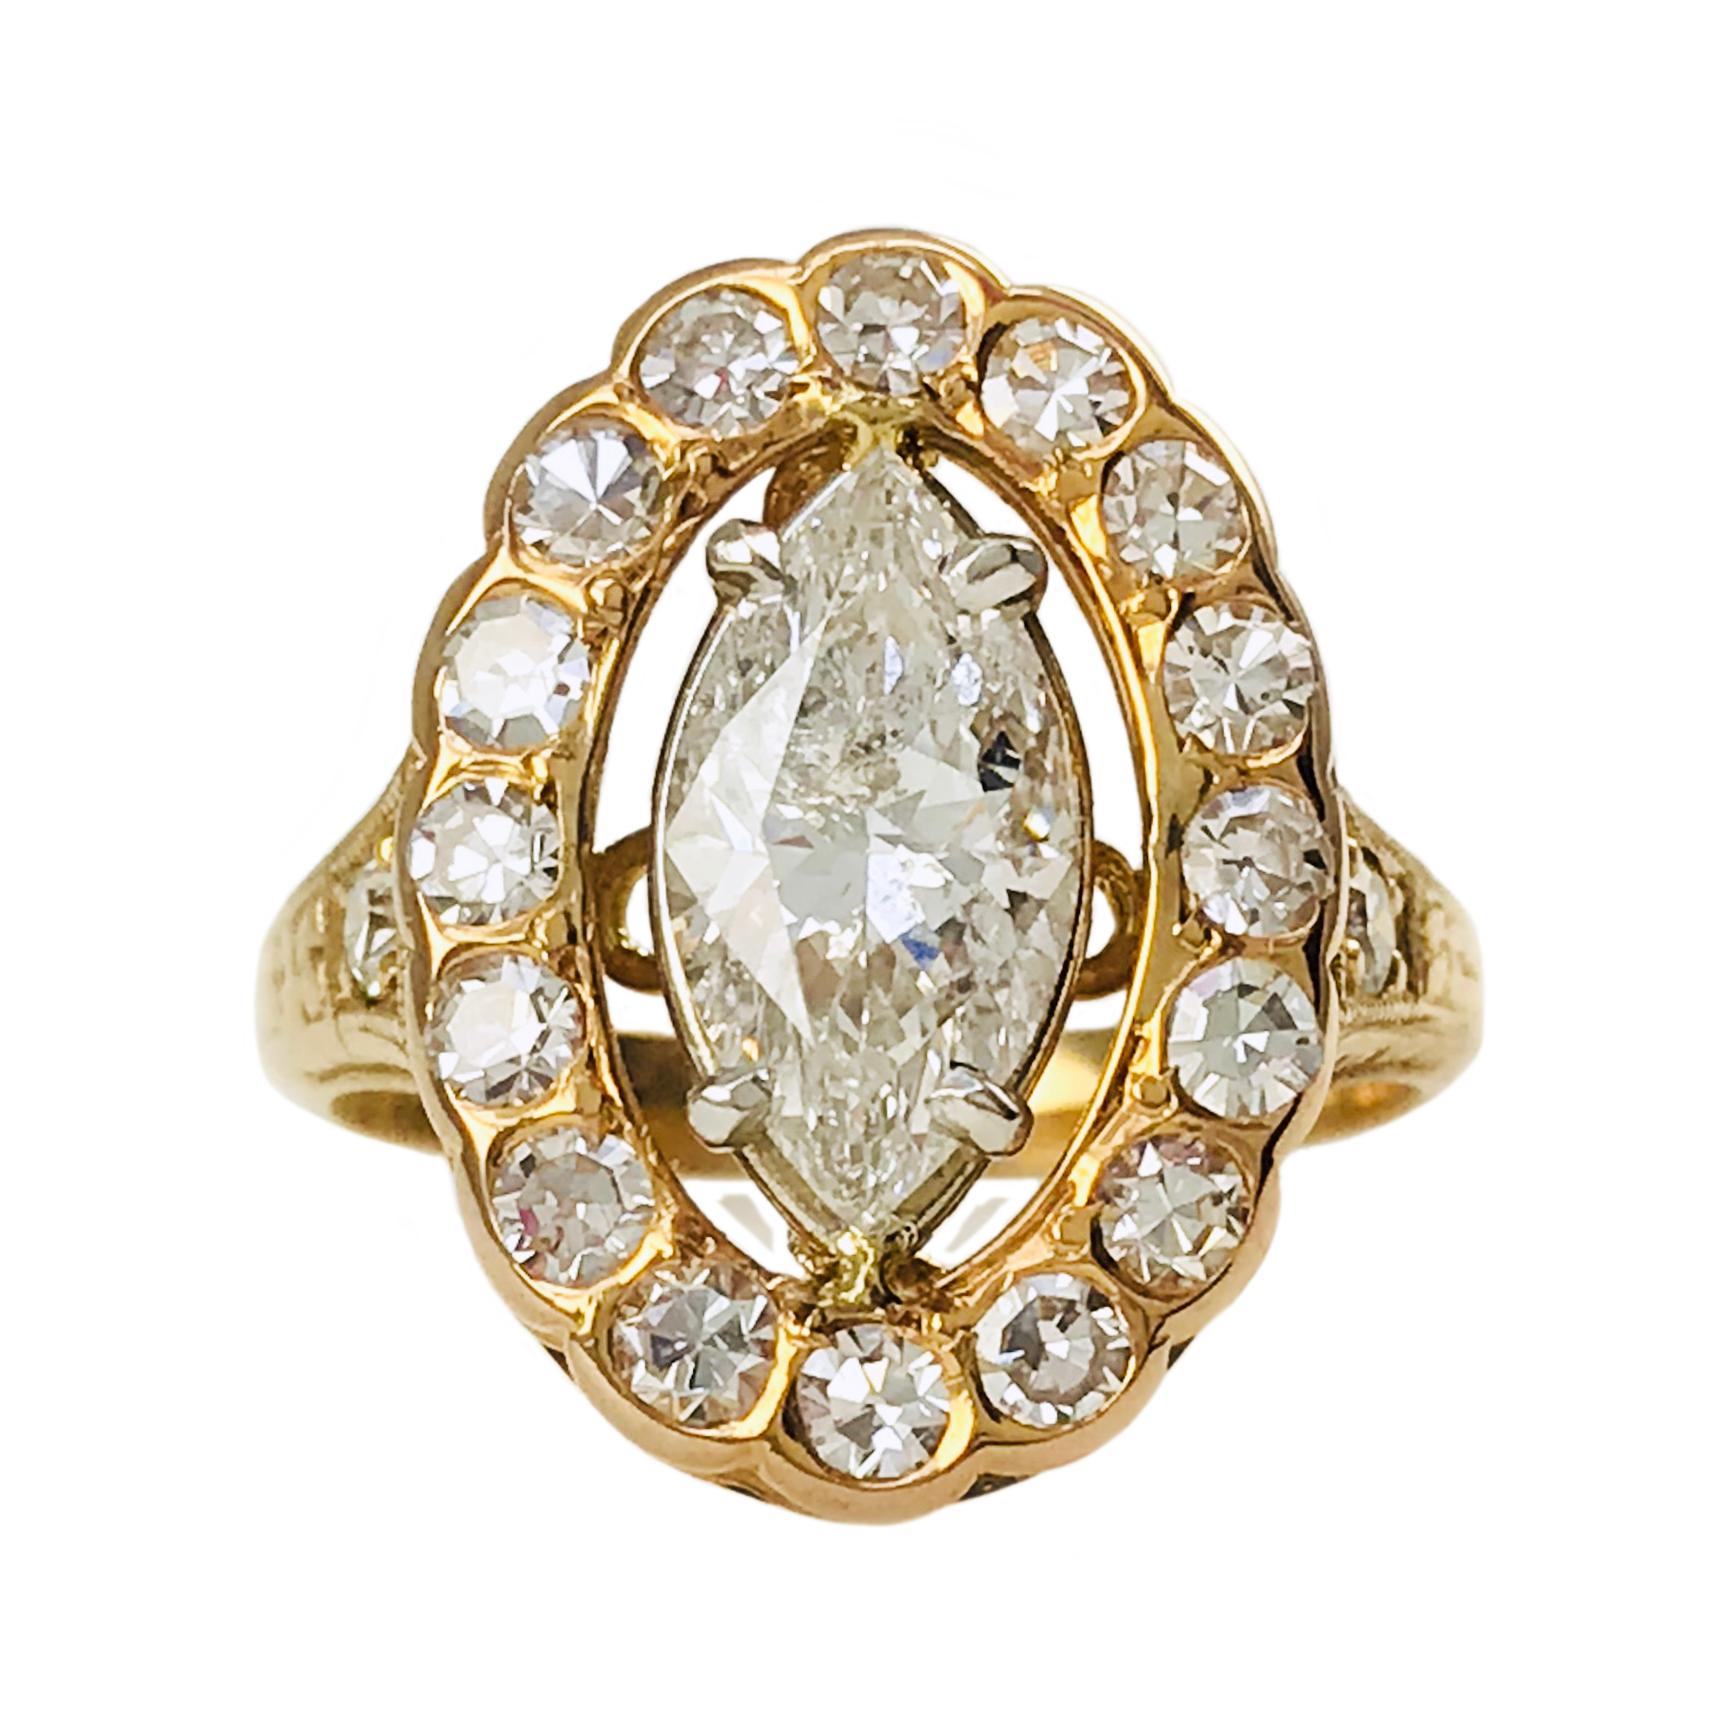 14 Karat Rose Gold Handgravur Marquise Diamant Ring. Das Zentrum ist ein Diamant im Marquise-Schliff mit den Maßen 11,40 x 5,70 x 4,20 mm und einem Gewicht von 1,58ct. Der Diamant ist in einer vierzackigen Weißgoldfassung gefasst und hat eine